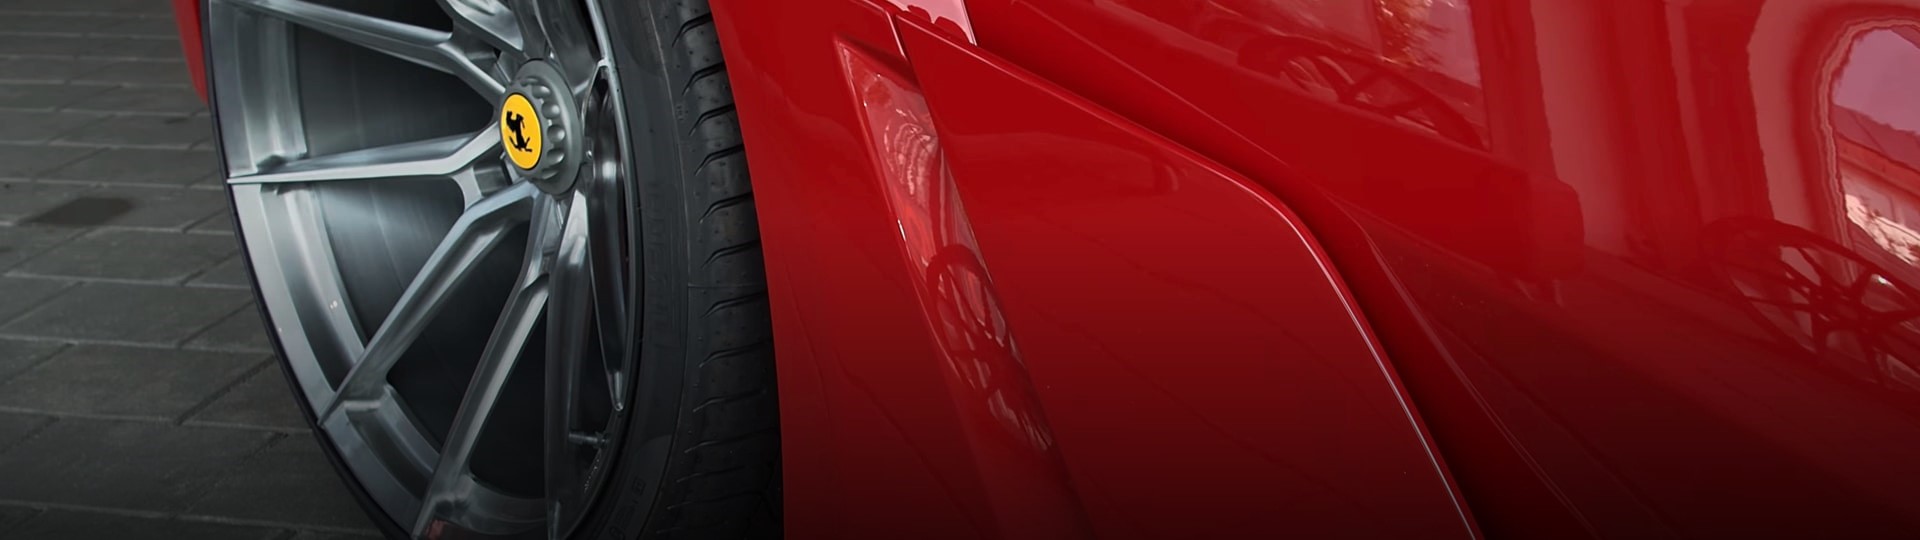 Ferrari představilo svůj dosud nejrychlejší a nejvýkonnější vůz